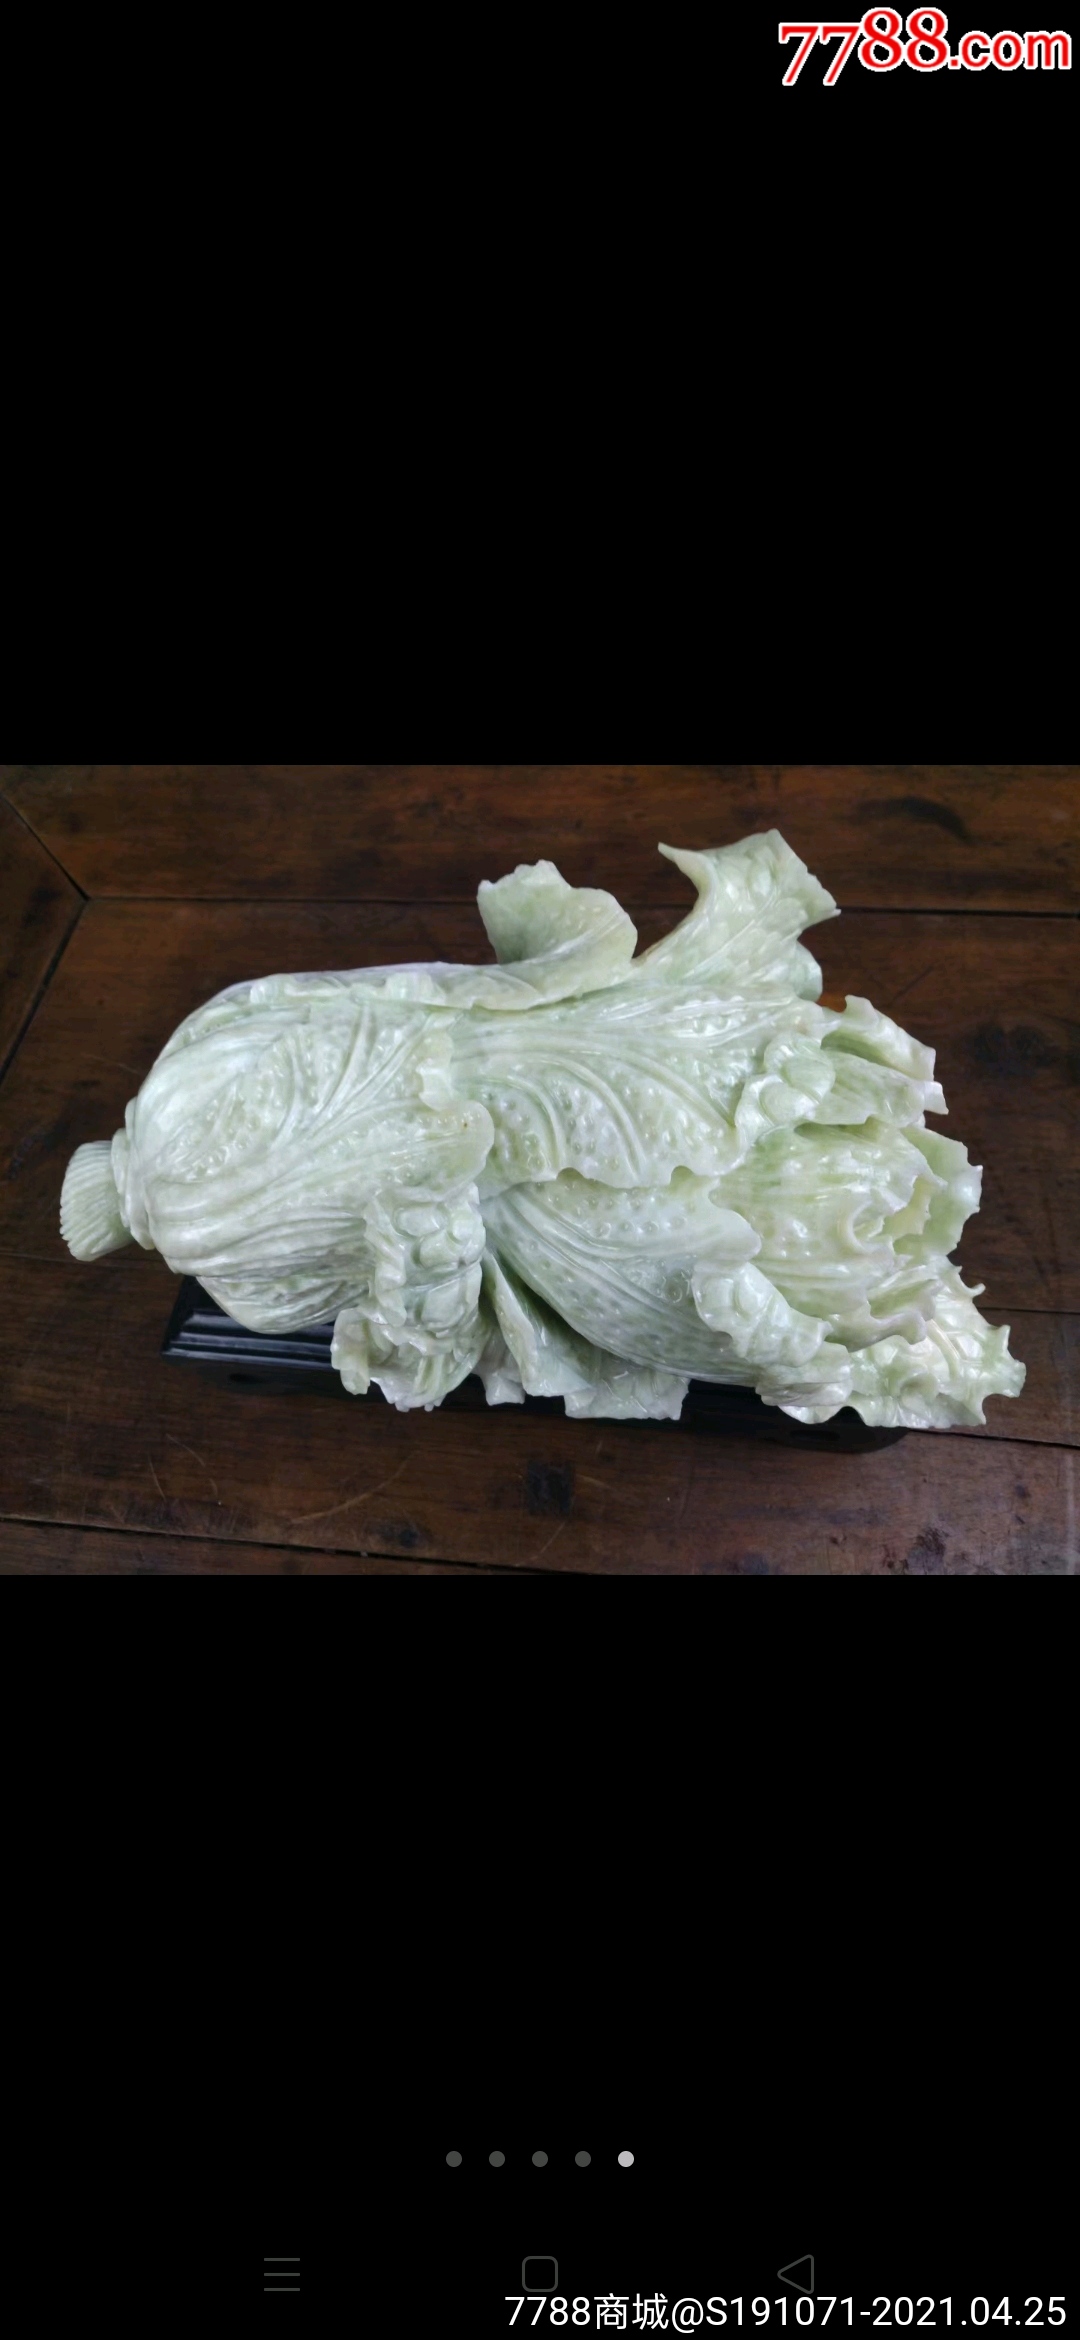 寓意还与白菜的颜色和外形有关,使用纯白的和田玉料雕刻而成的白菜,有